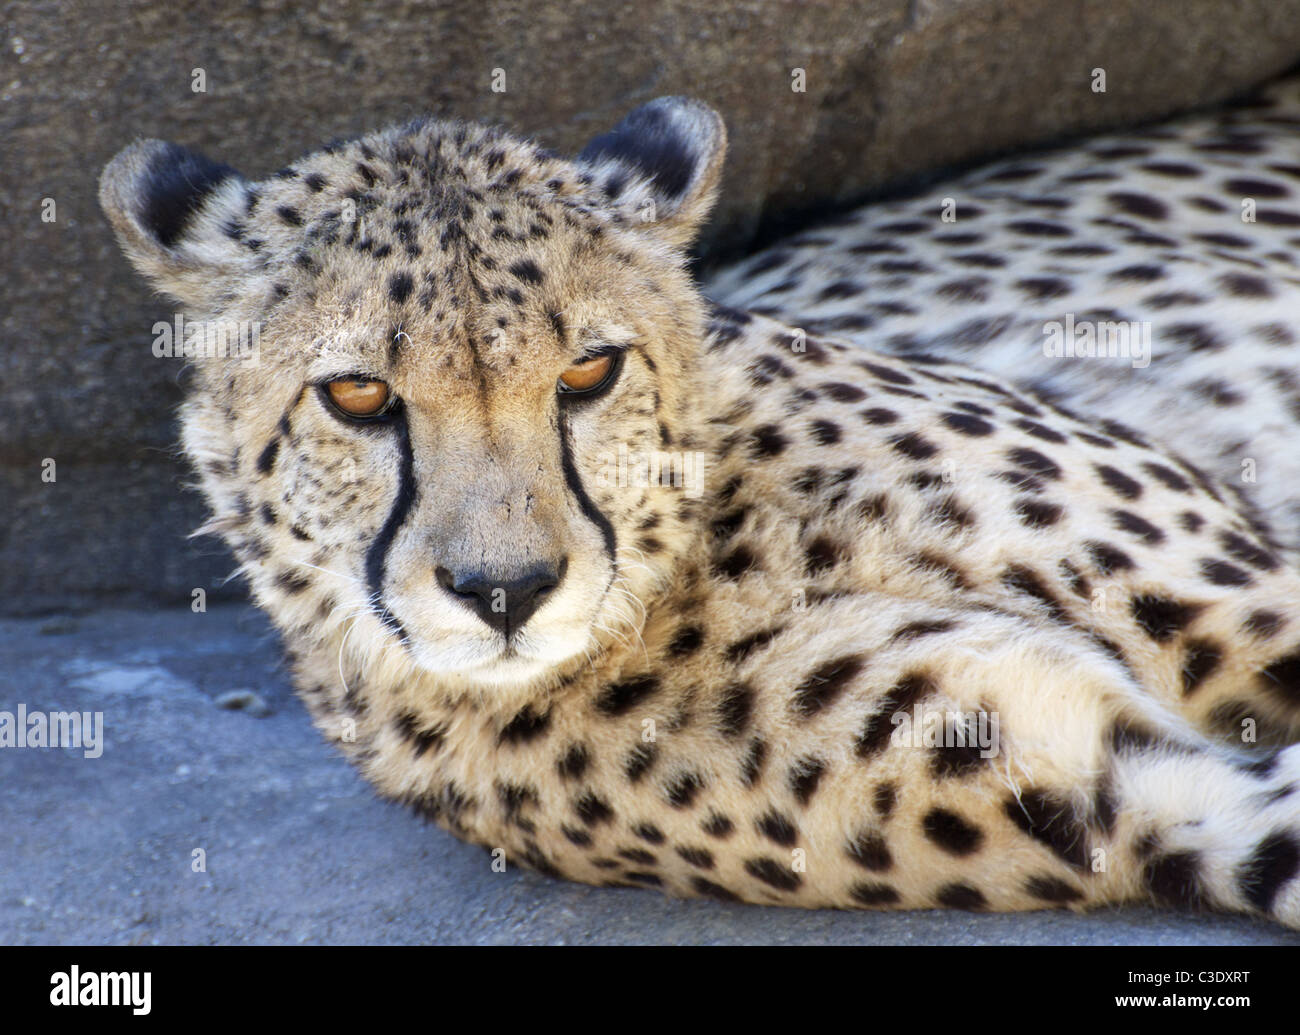 Cheetah lying and looking at camera Stock Photo